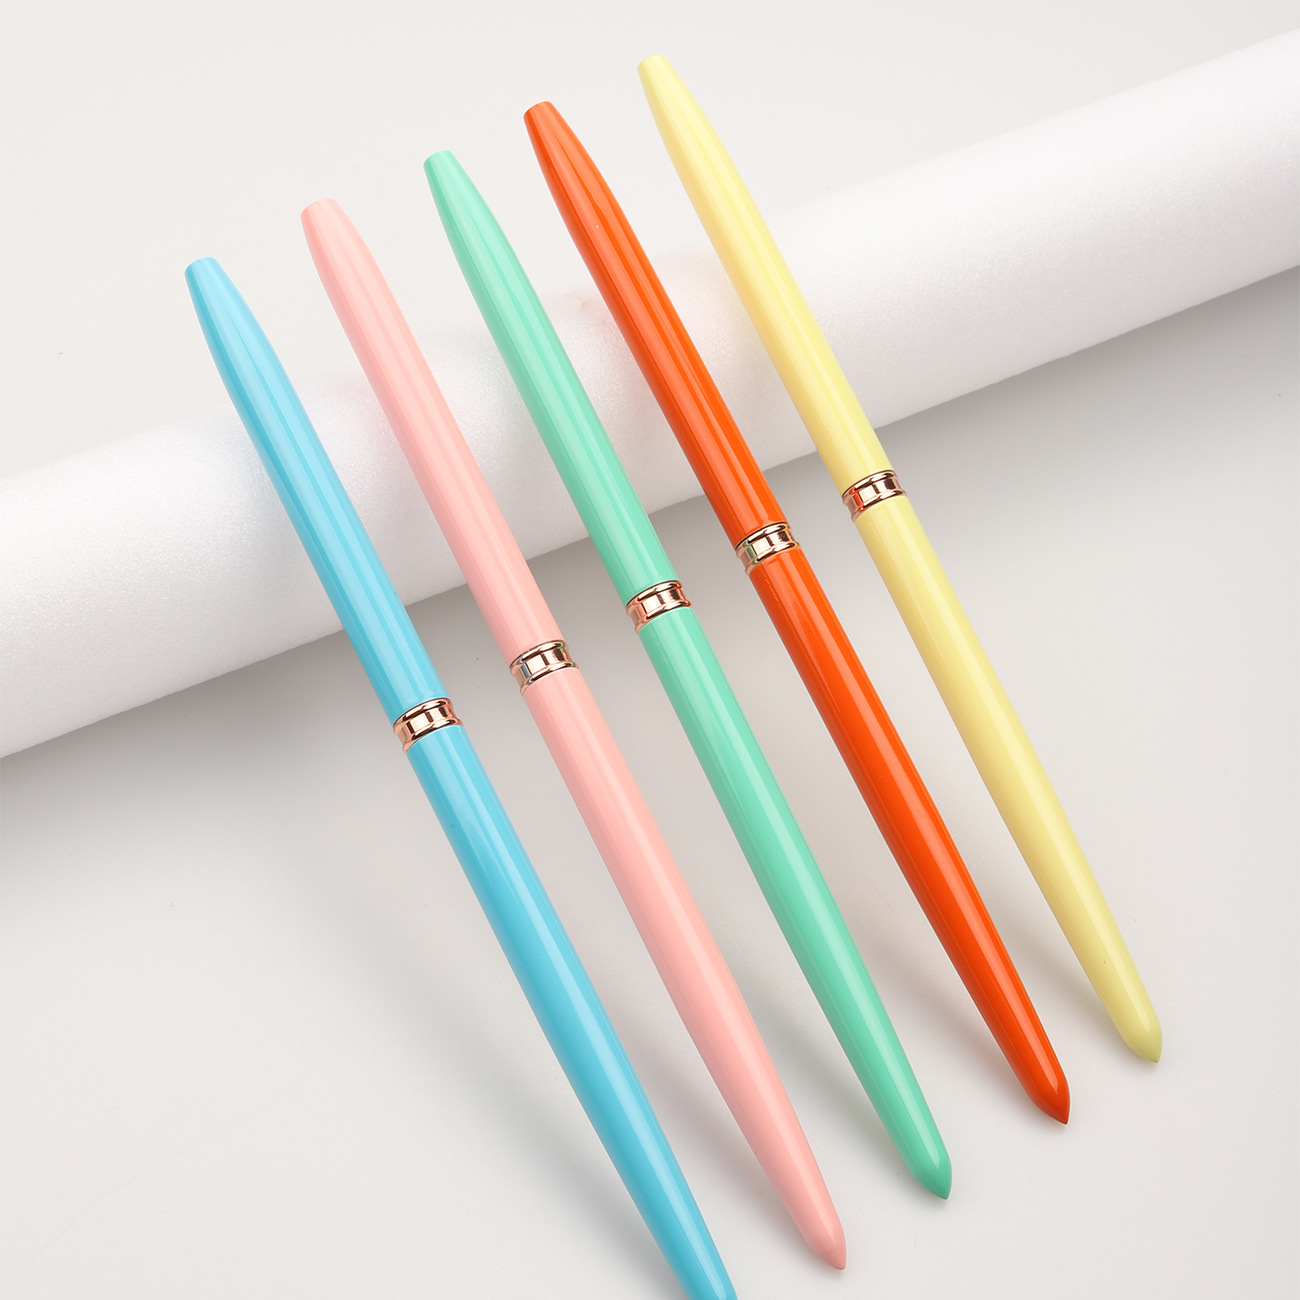 375彩色金属杆针管拉线笔5支装针管画花彩绘拉线彩绘工具